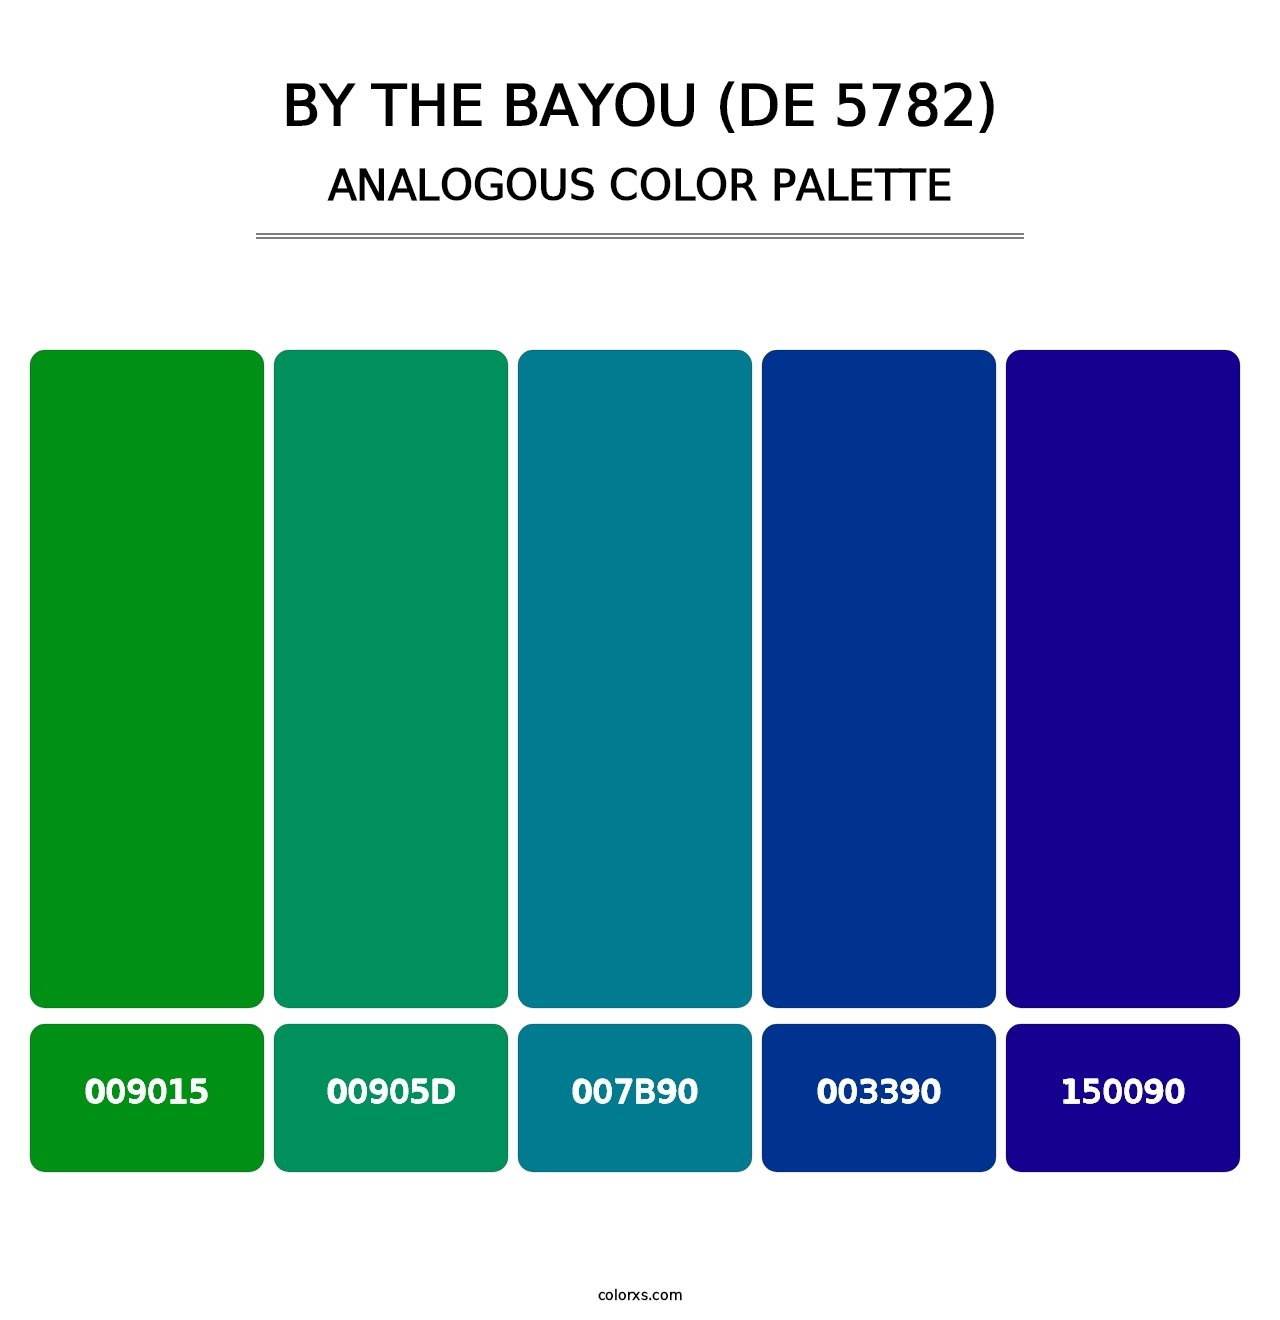 By the Bayou (DE 5782) - Analogous Color Palette